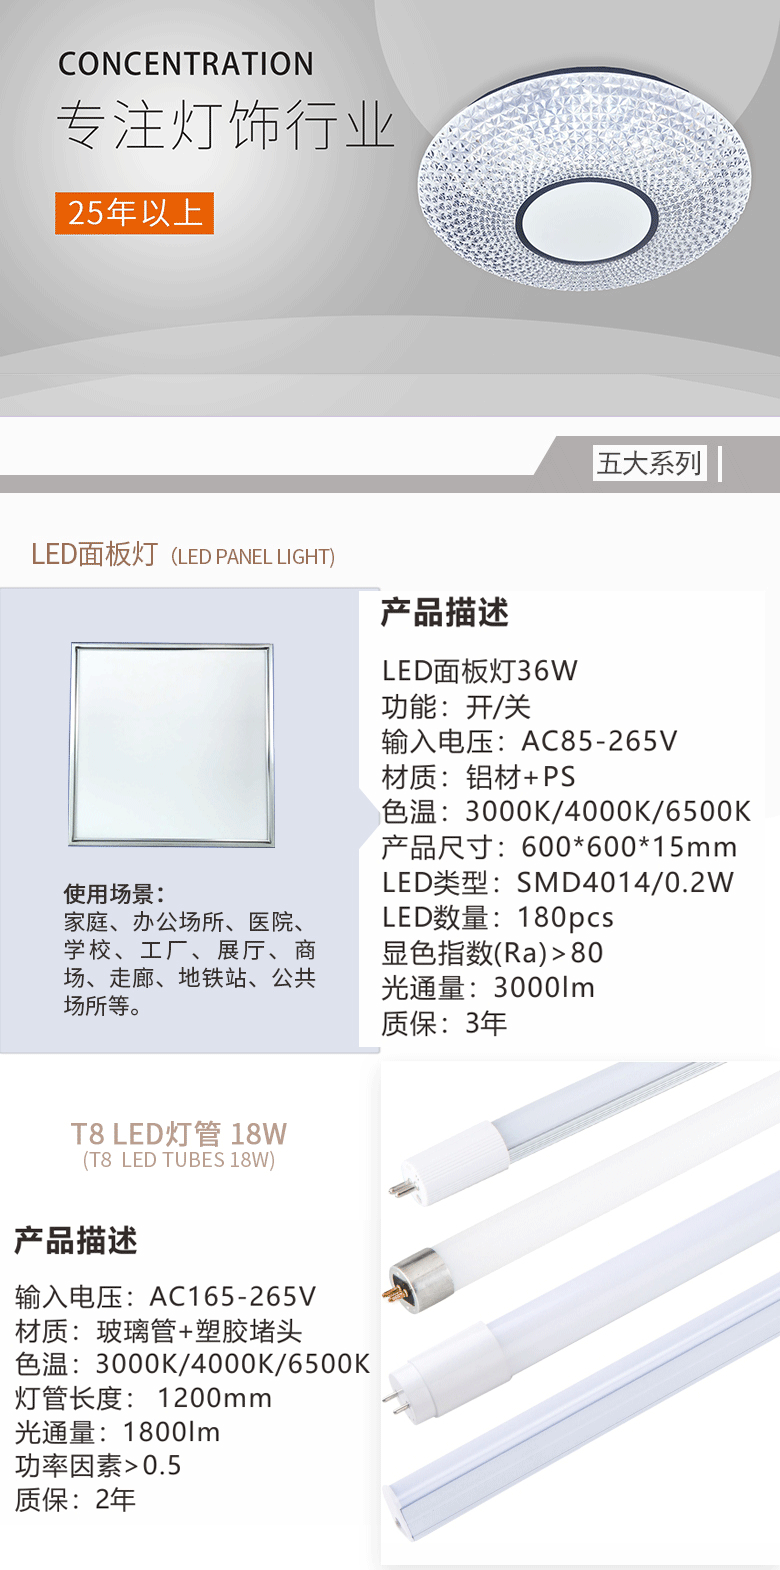 圆形LED面板灯产品简介